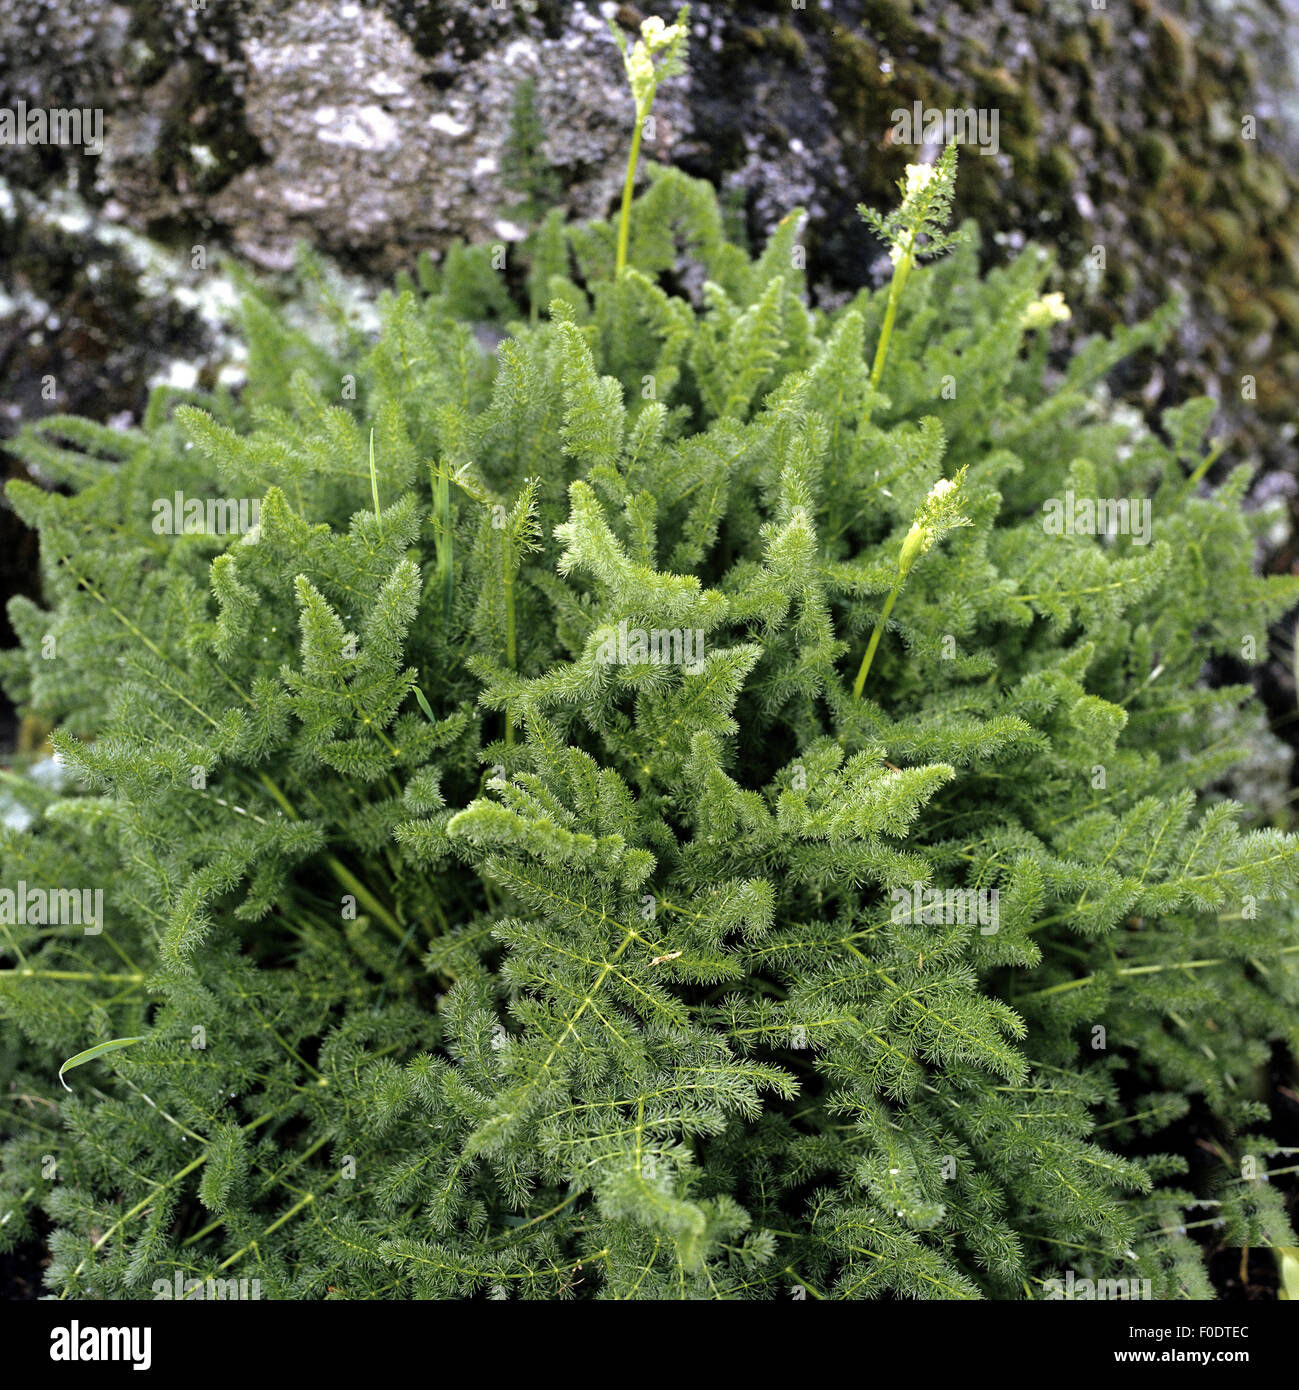 Baerwurz, Meum athamanticum, Heilpflanzen, Foto Stock